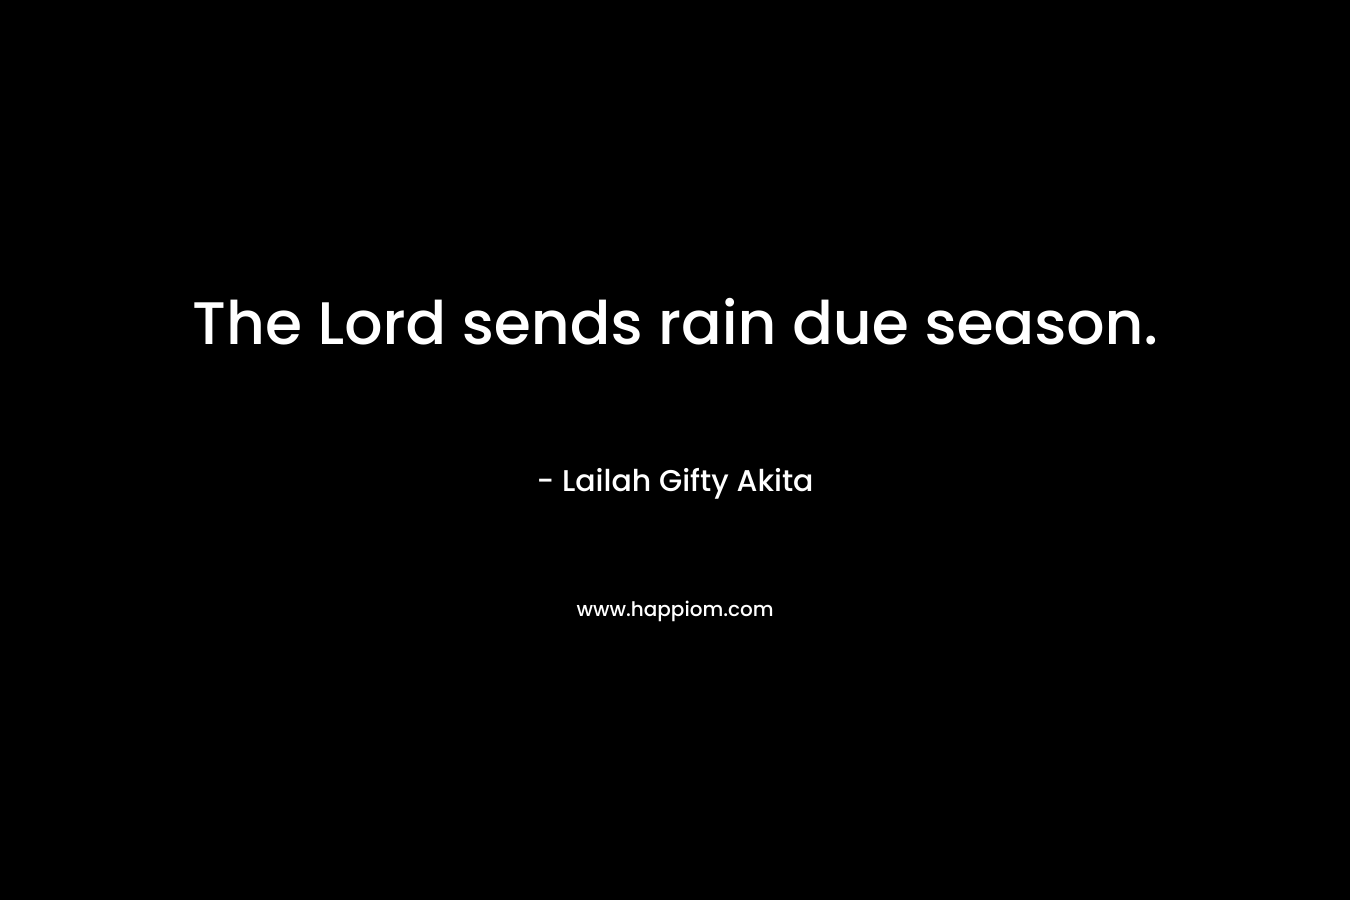 The Lord sends rain due season.